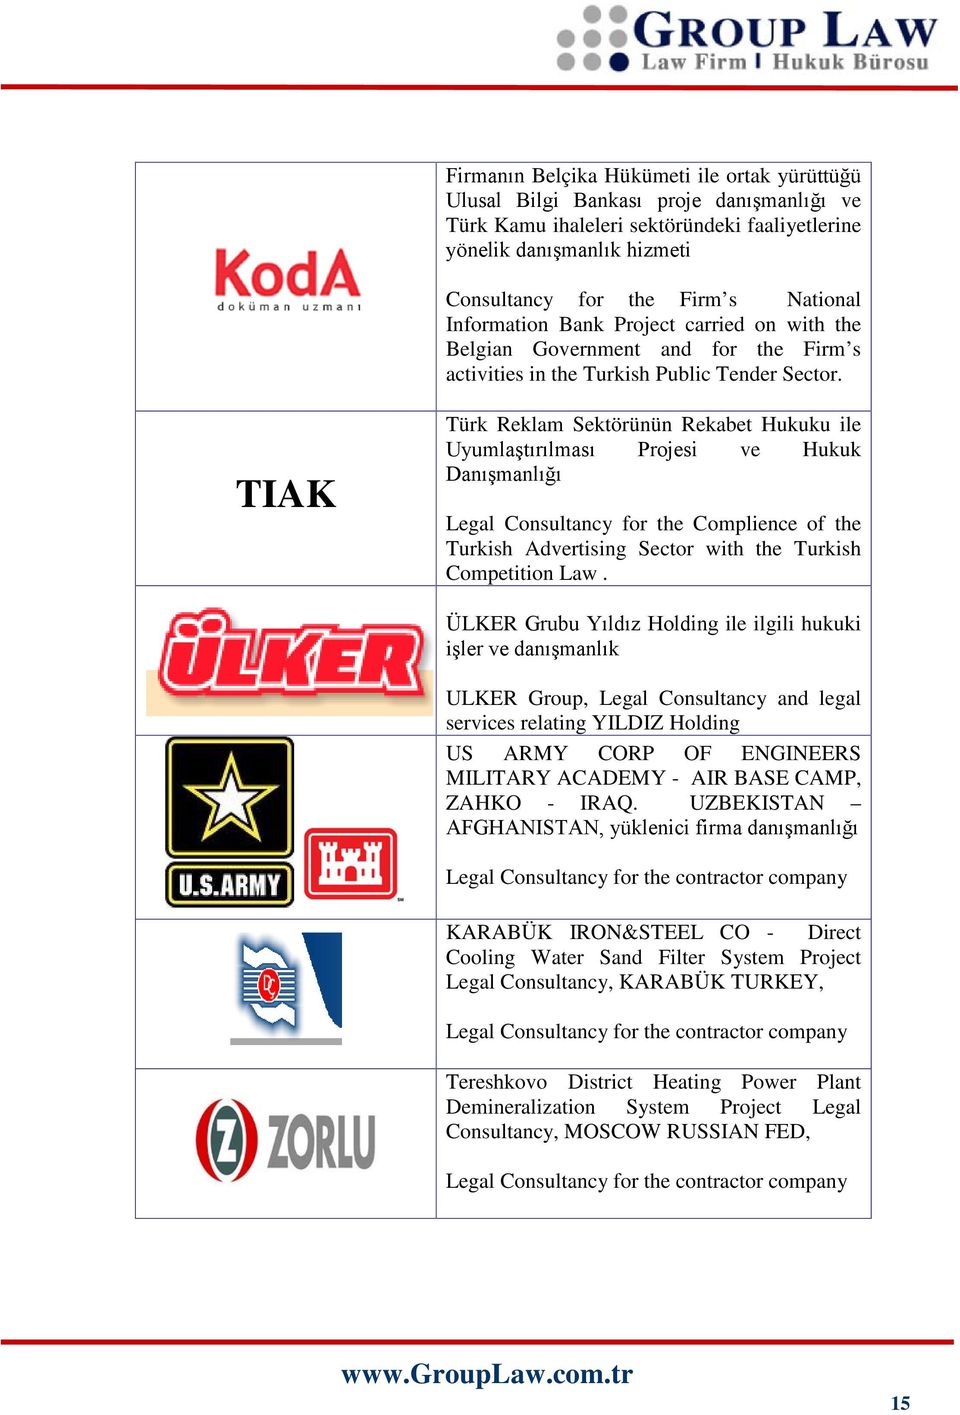 TIAK Türk Reklam Sektörünün Rekabet Hukuku ile Uyumlaştırılması Projesi ve Hukuk Danışmanlığı Legal Consultancy for the Complience of the Turkish Advertising Sector with the Turkish Competition Law.